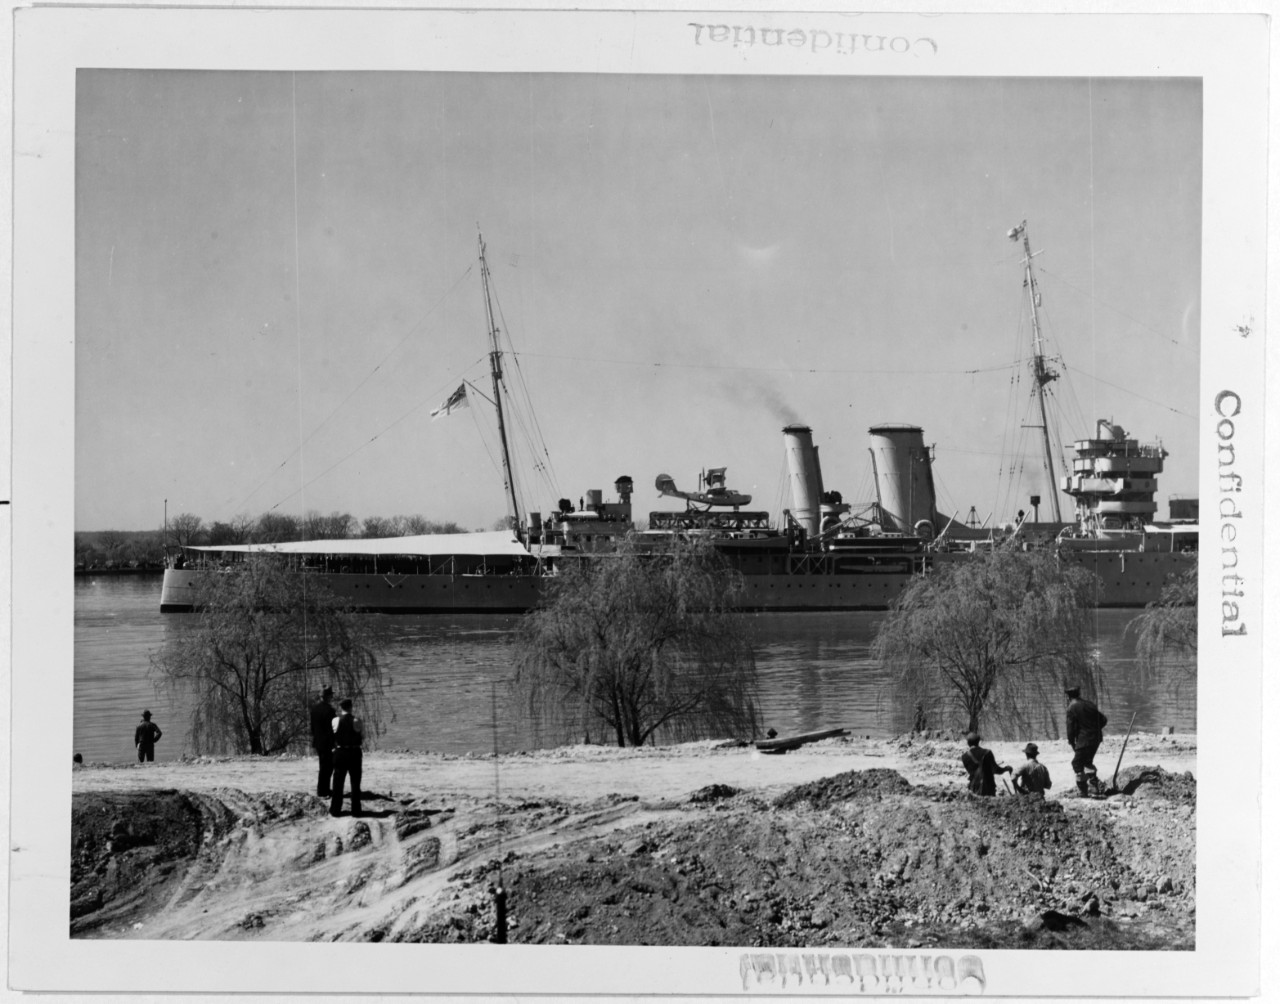 YORK (British heavy cruiser, 1928)